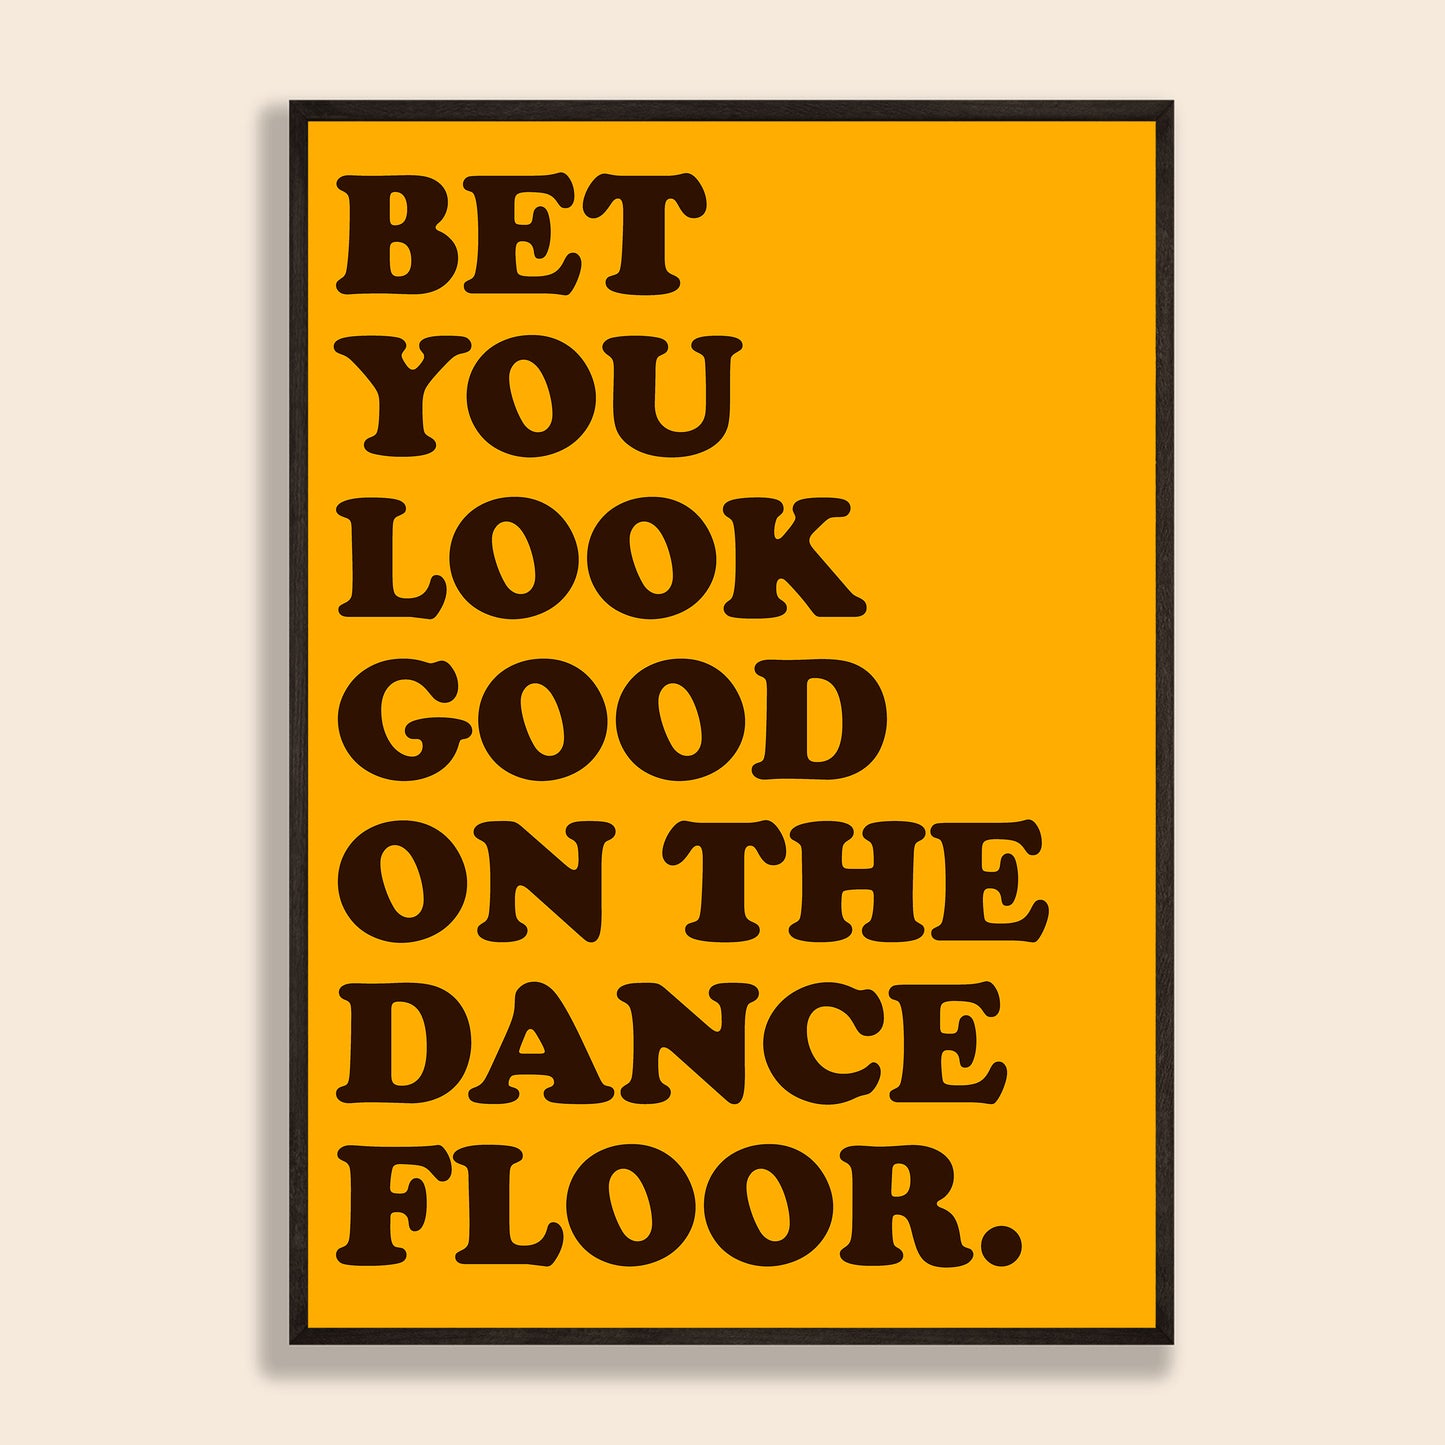 Bet You Look Good On The Dancefloor Print